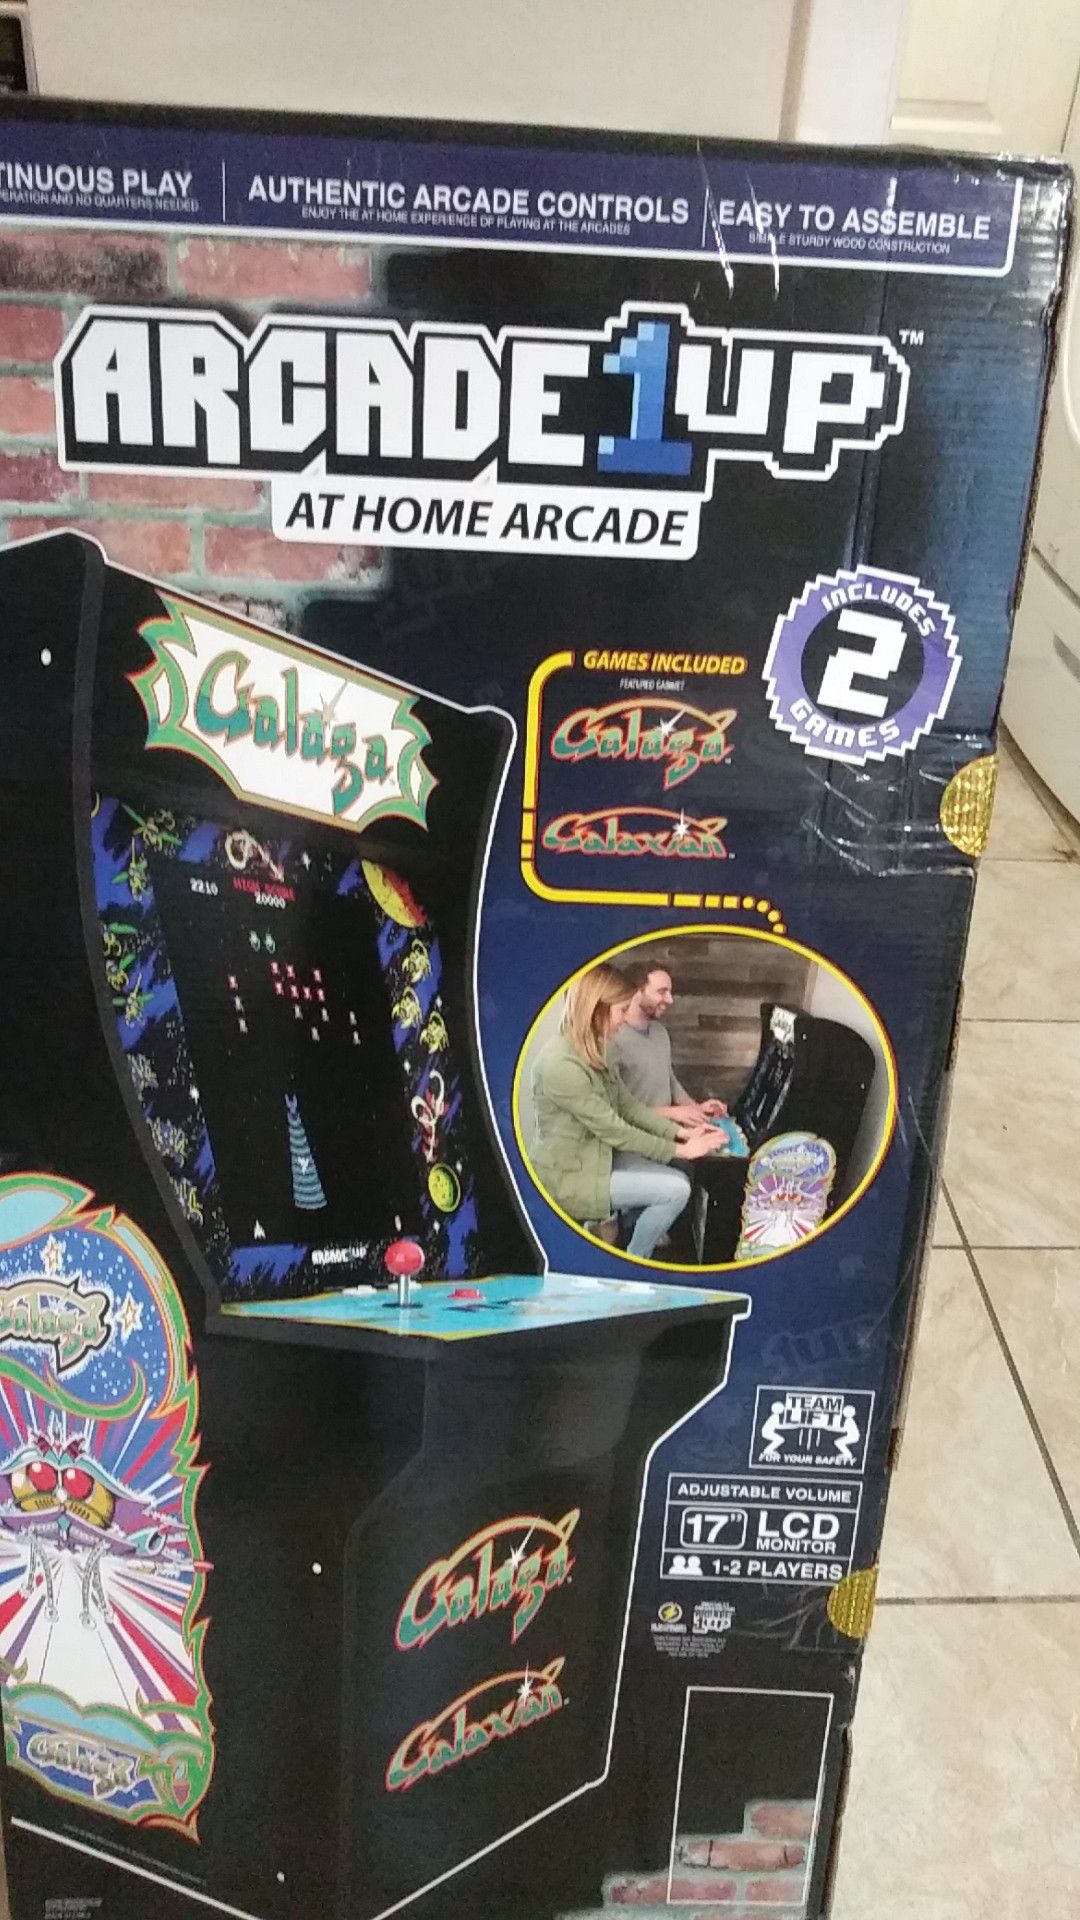 Arcade 1up at home arcade